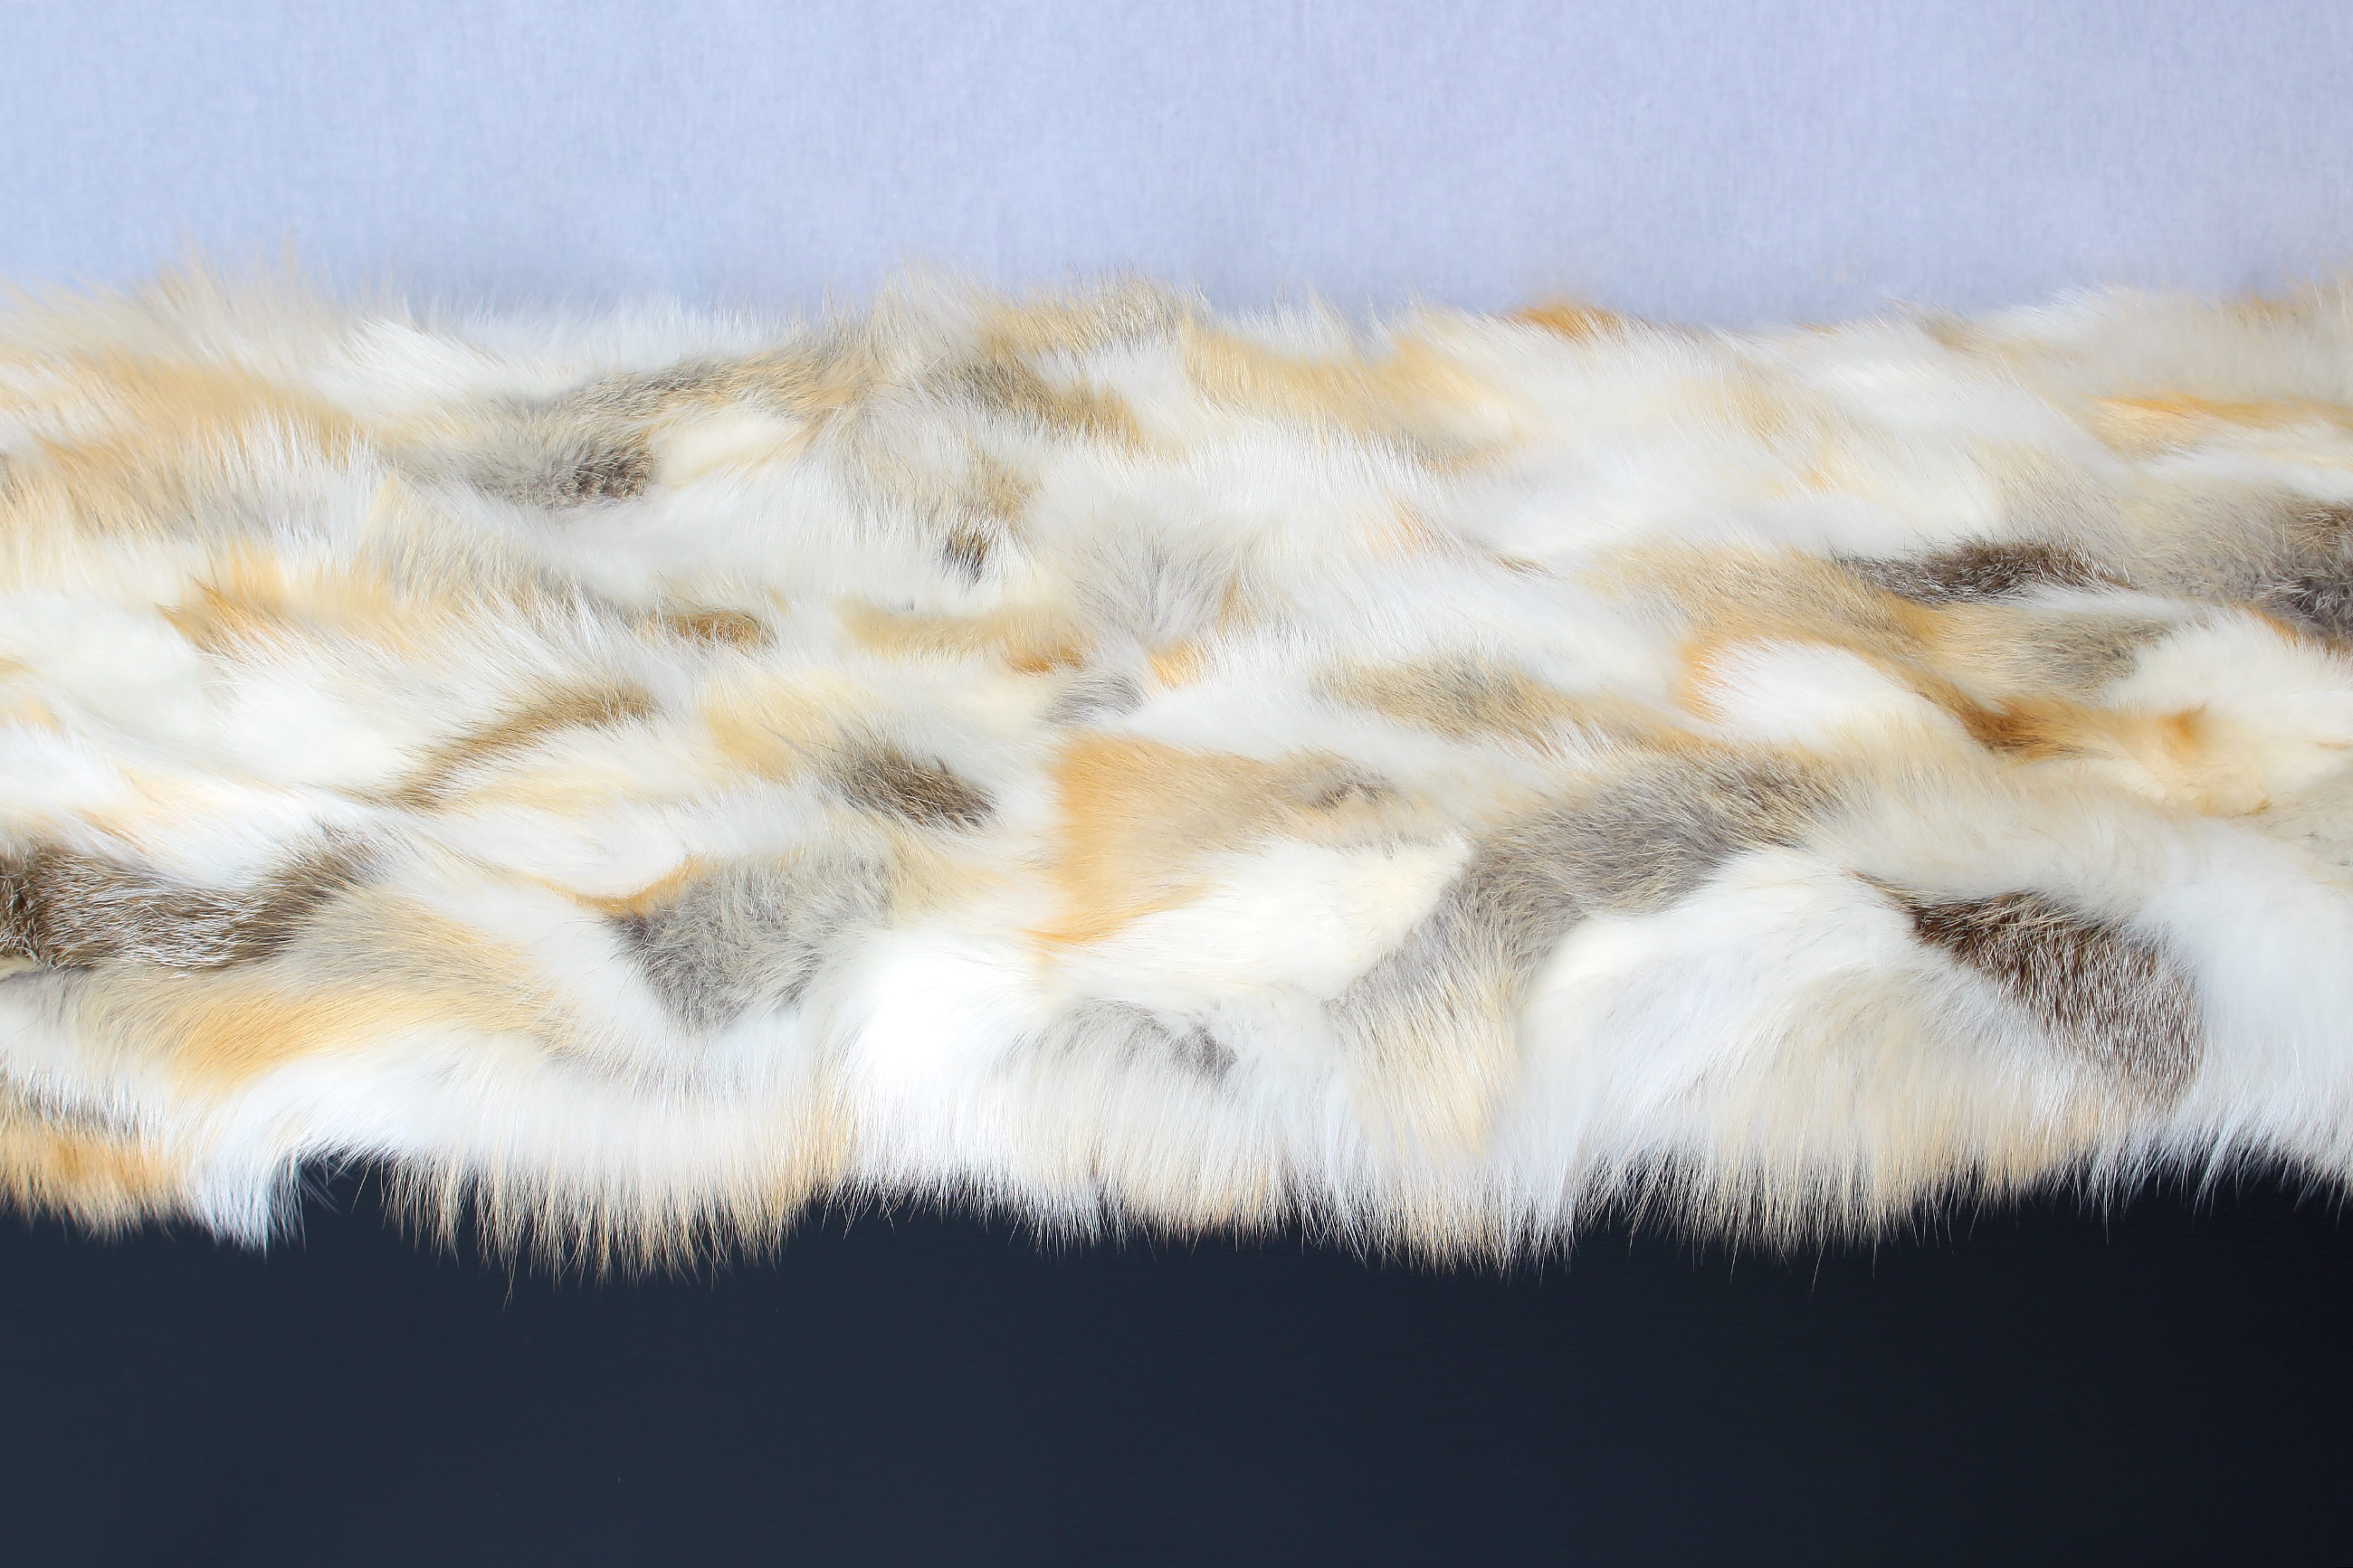 Genuine Golden Fox Fur Ottoman